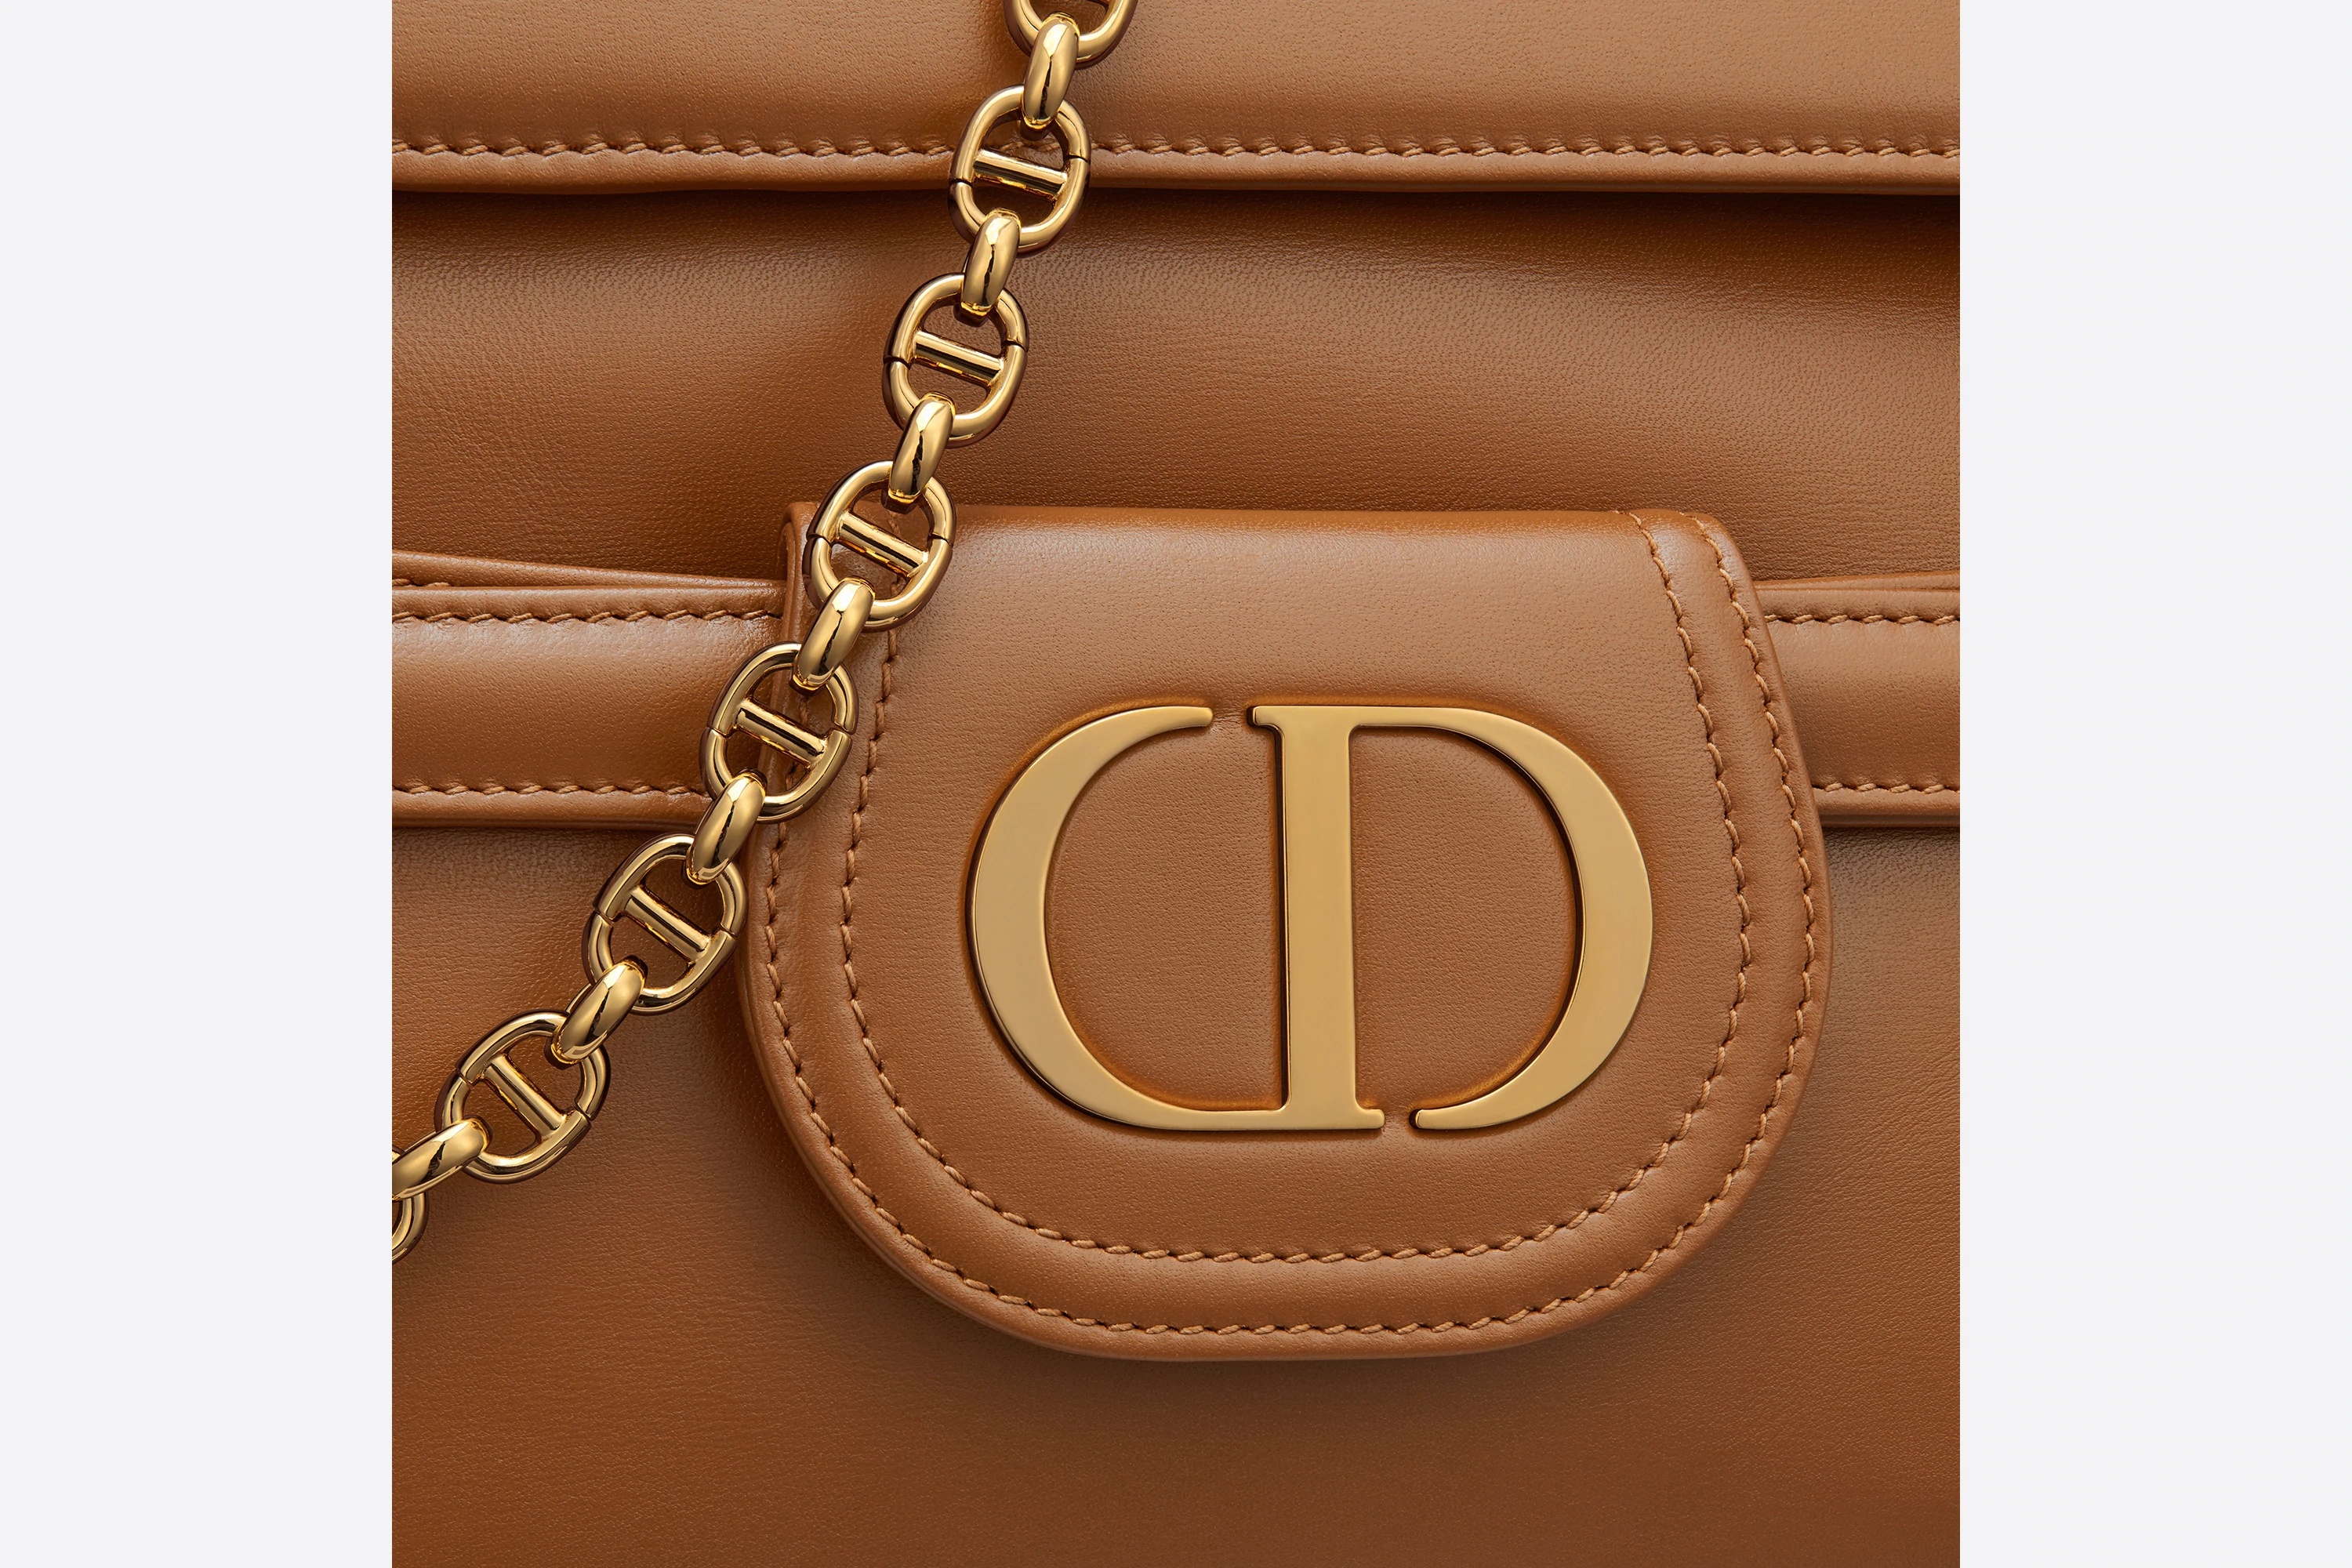 Medium DiorDouble Bag - 6